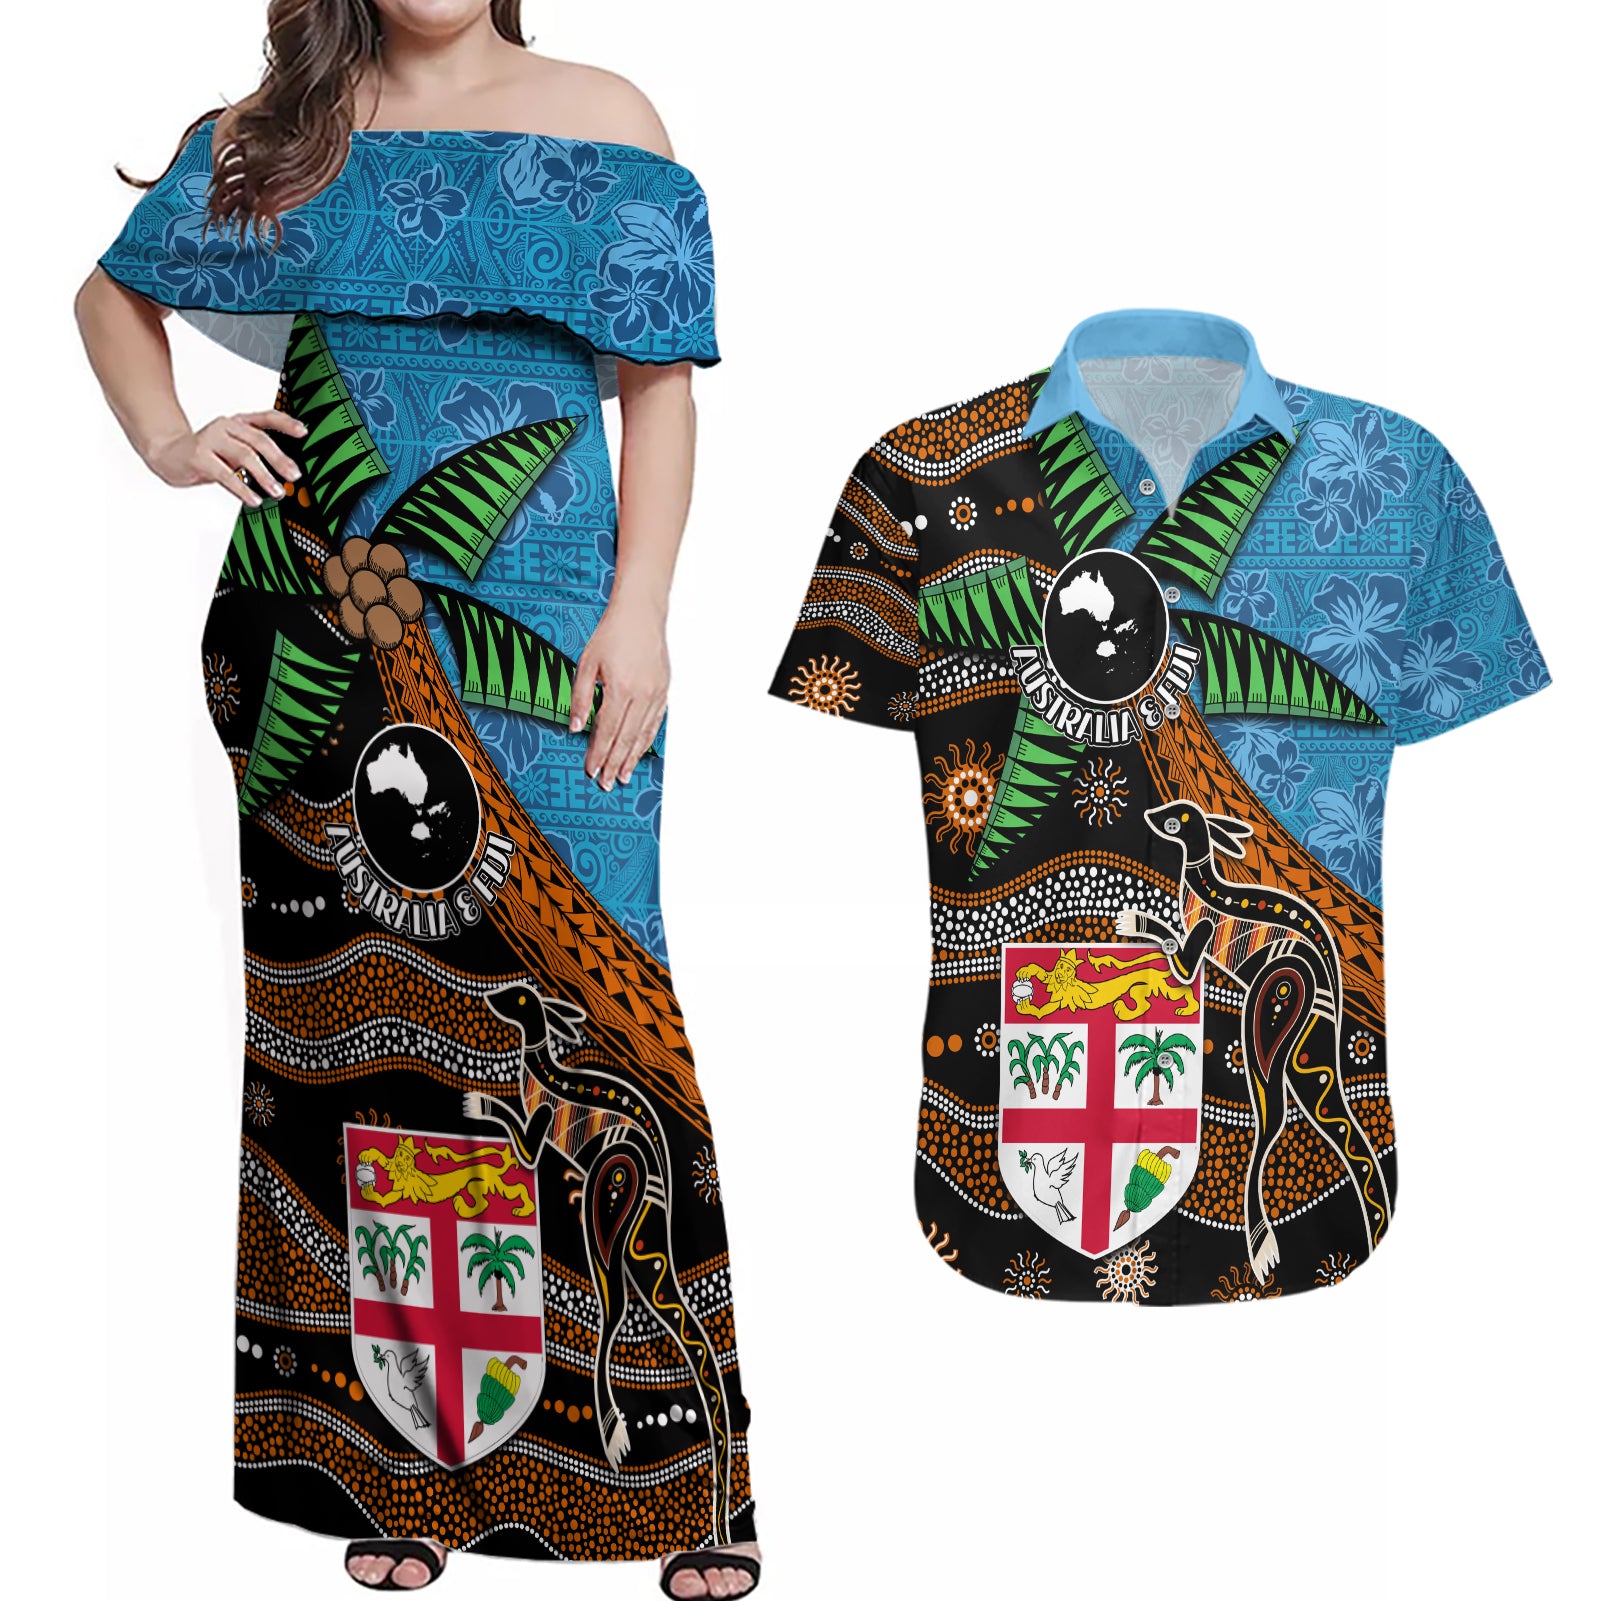 Fiji and Australia Couples Matching Off Shoulder Maxi Dress and Hawaiian Shirt Fijian and Aboriginal mix Culture